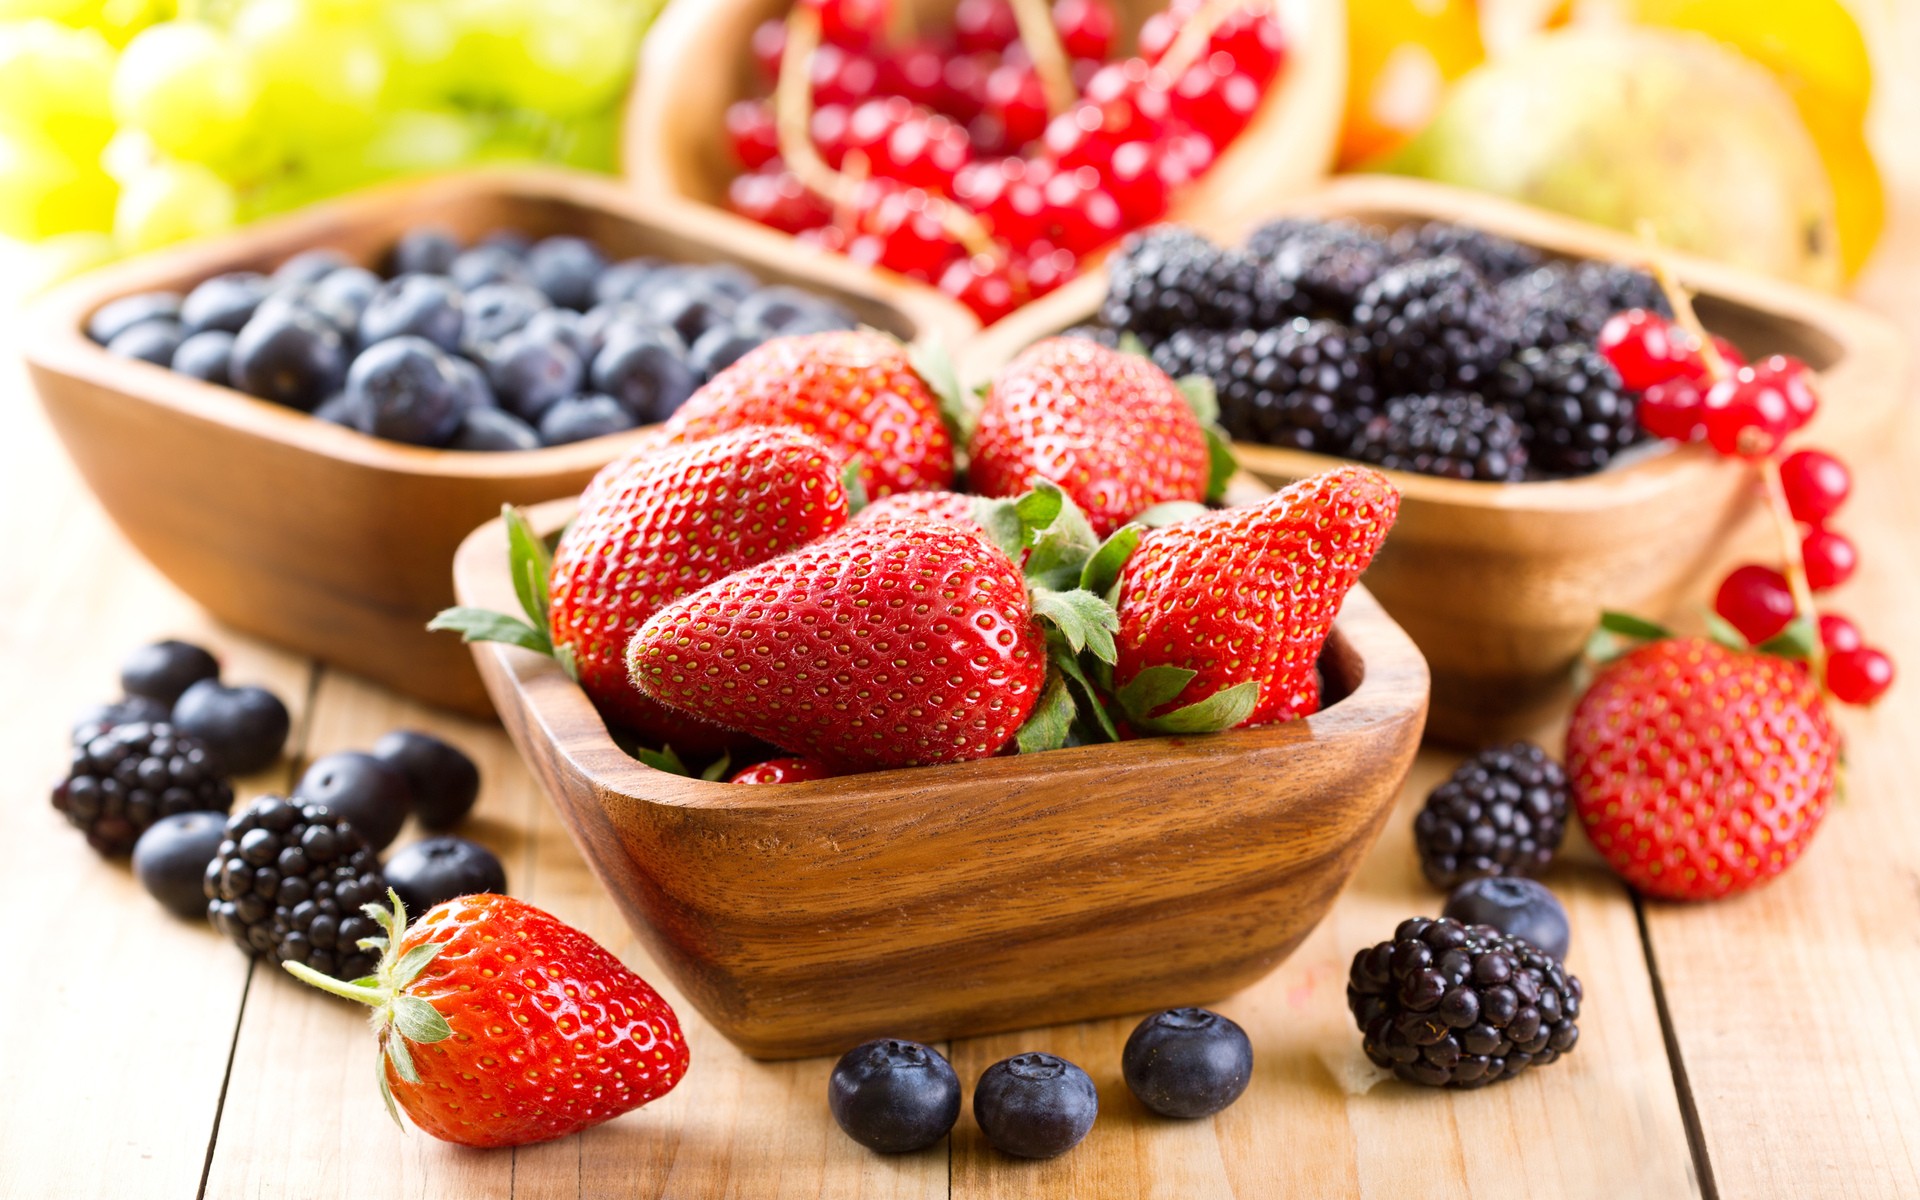 General 1920x1200 food lunch closeup fruit wooden surface strawberries blackberries blueberries bowls berries